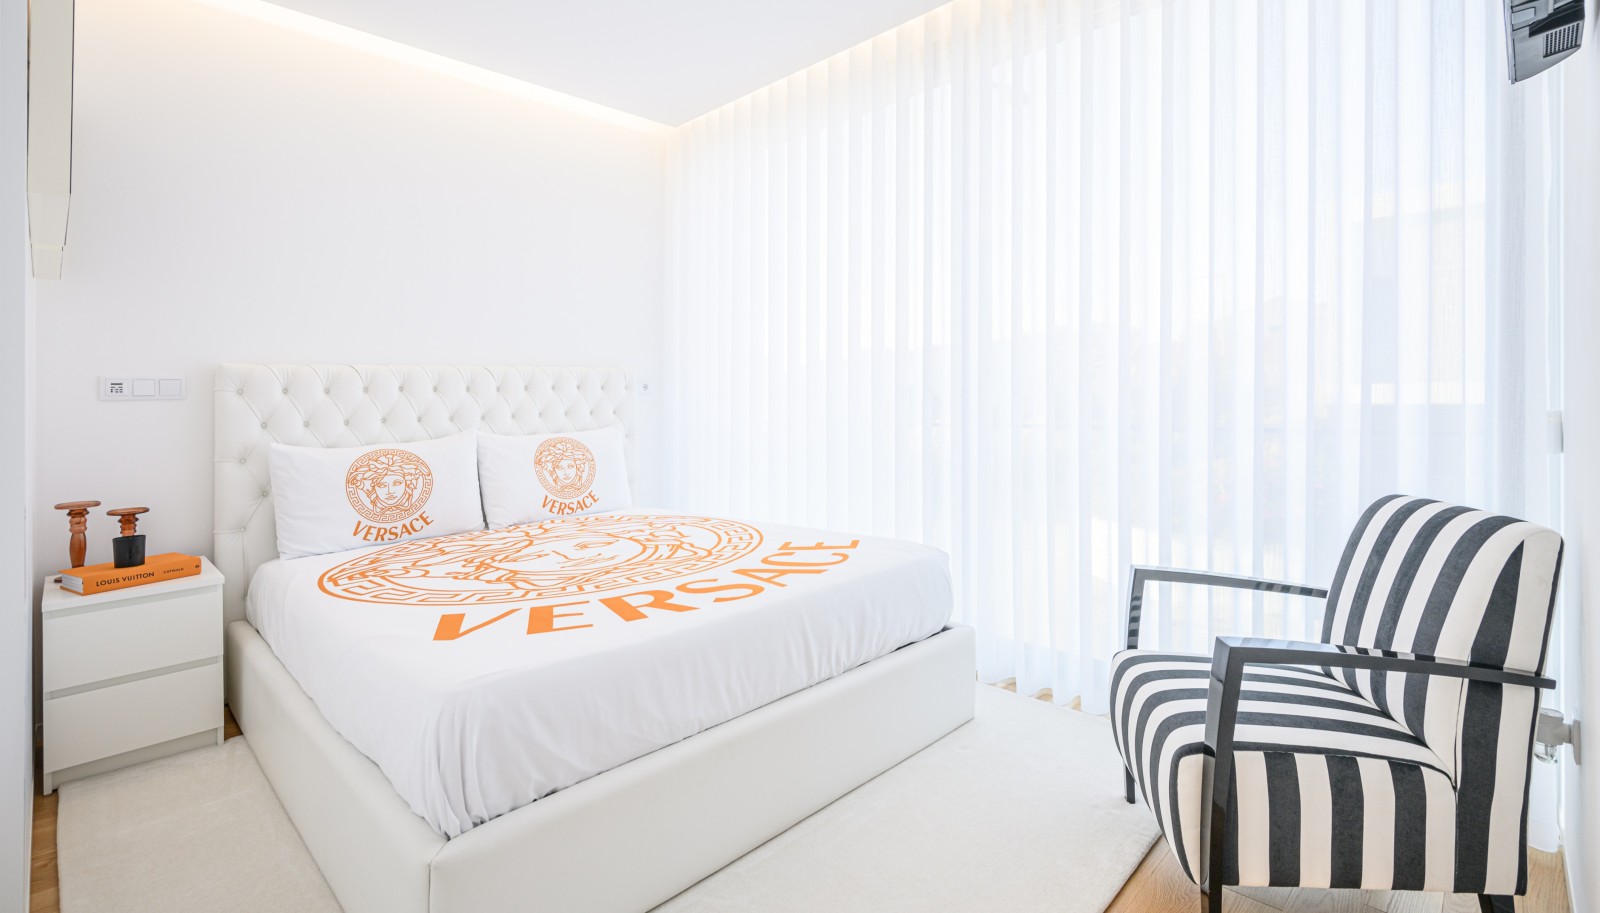 Villa mit drei Schlafzimmern, zu verkaufen, in Madalena, Porto, Portugal_242574